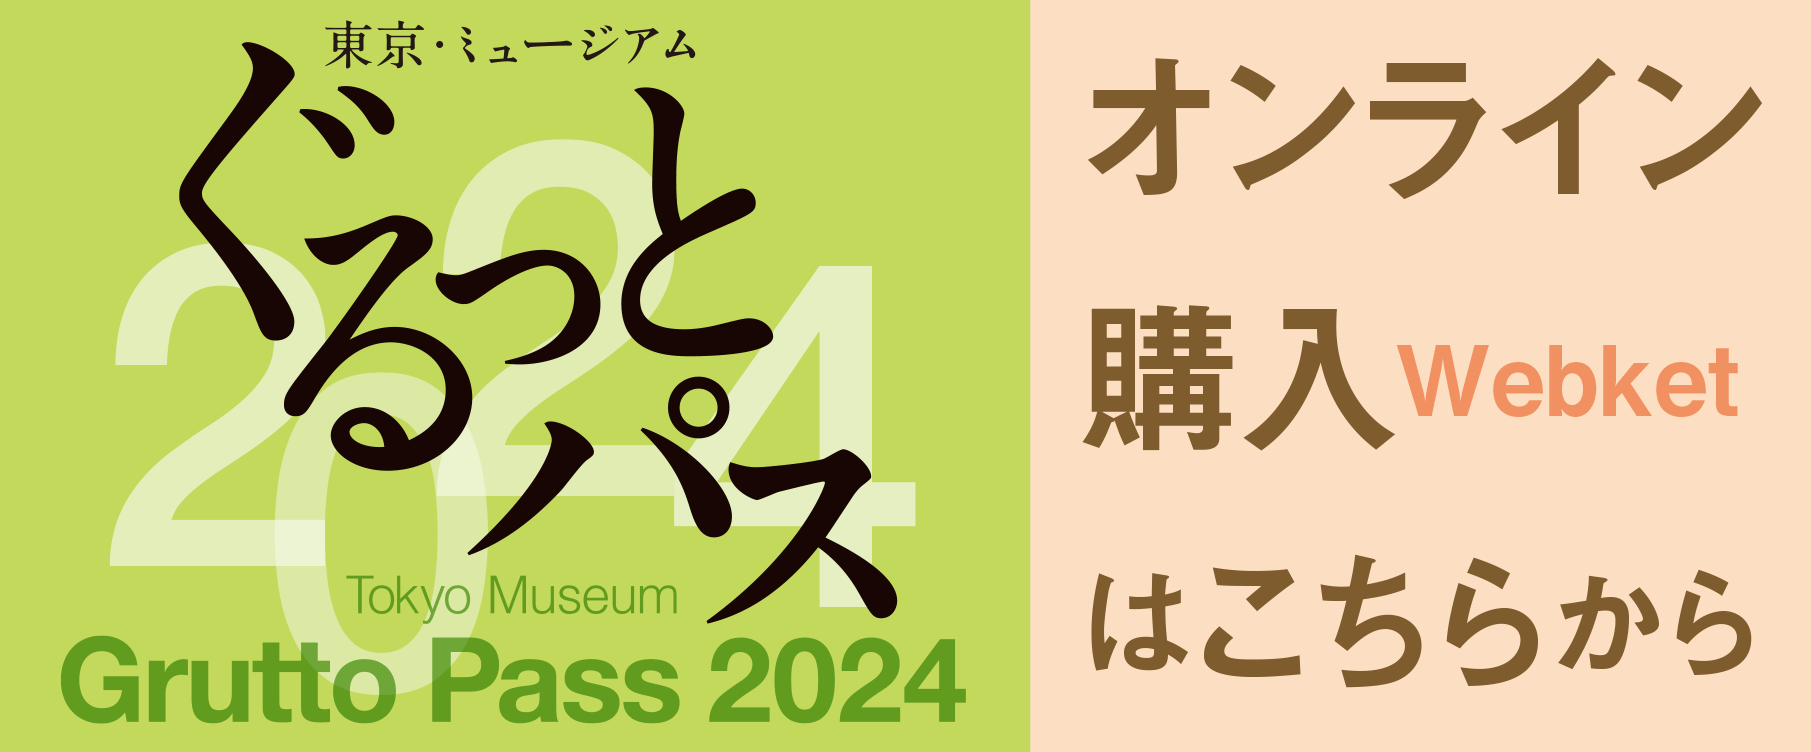 东京、博物馆绕一圈通过的2024在线购买从这里